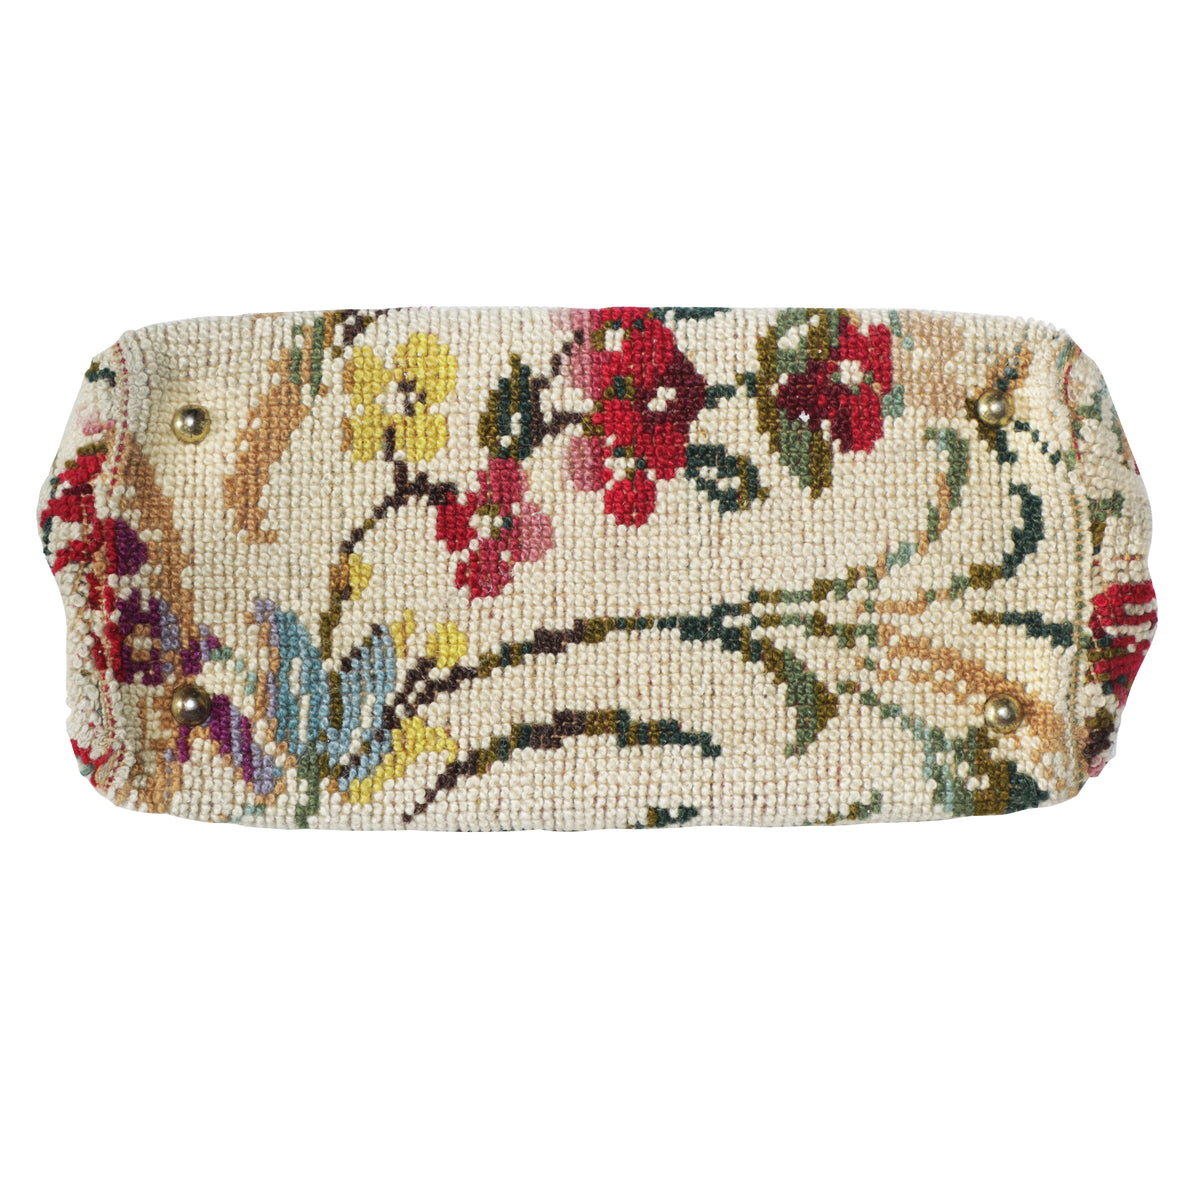 Vintage Tapestry Carpet Floral Doctor Satchel Top Handle Bag